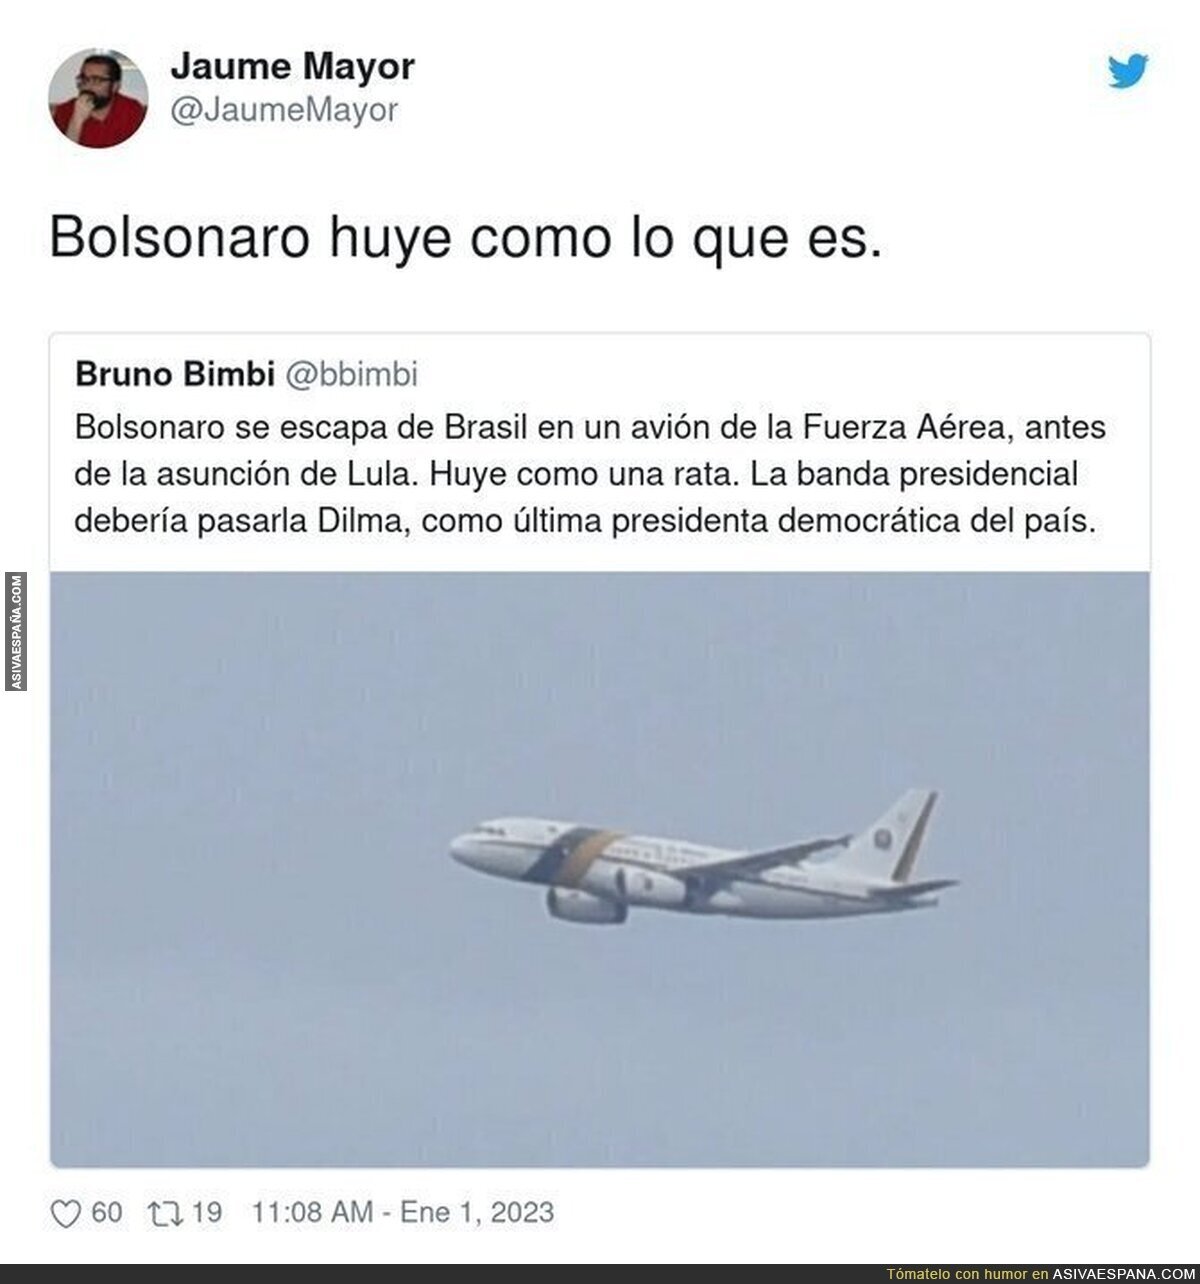 La espantosa huída de Bolsonaro